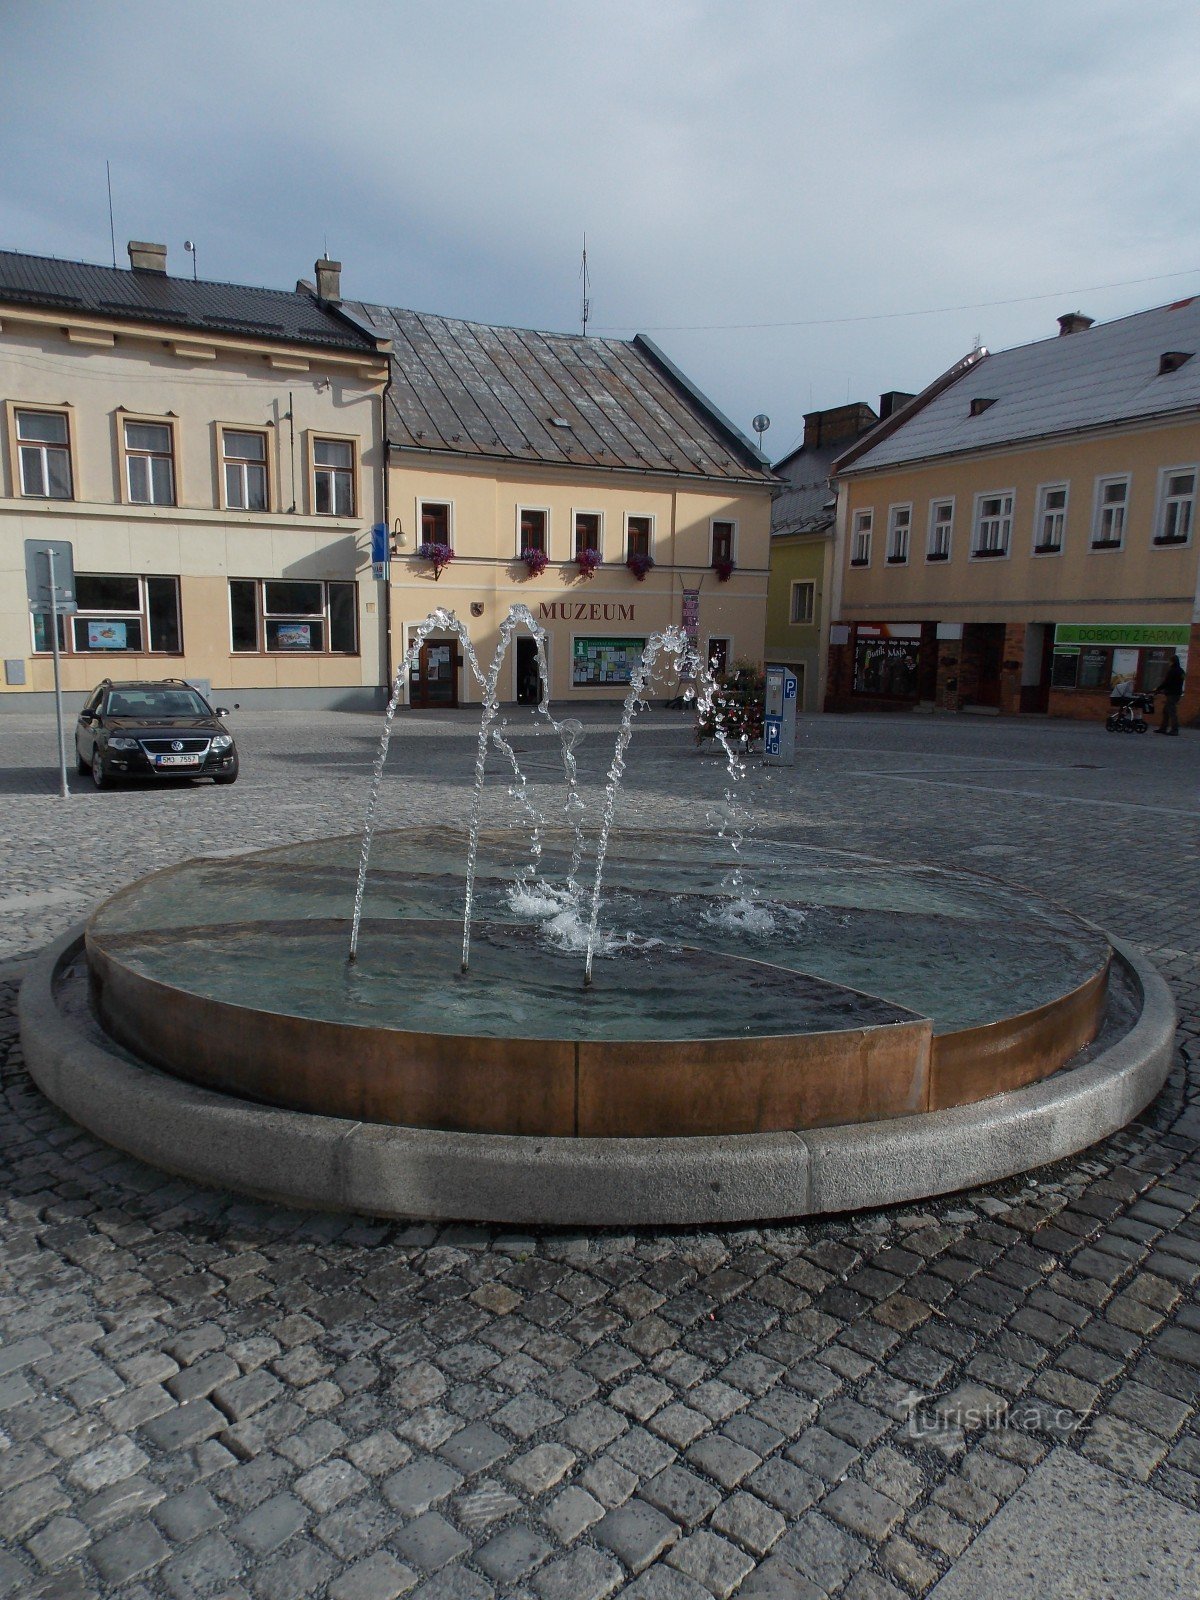 Trang trí quảng trường Rýmařov - đài phun nước mới